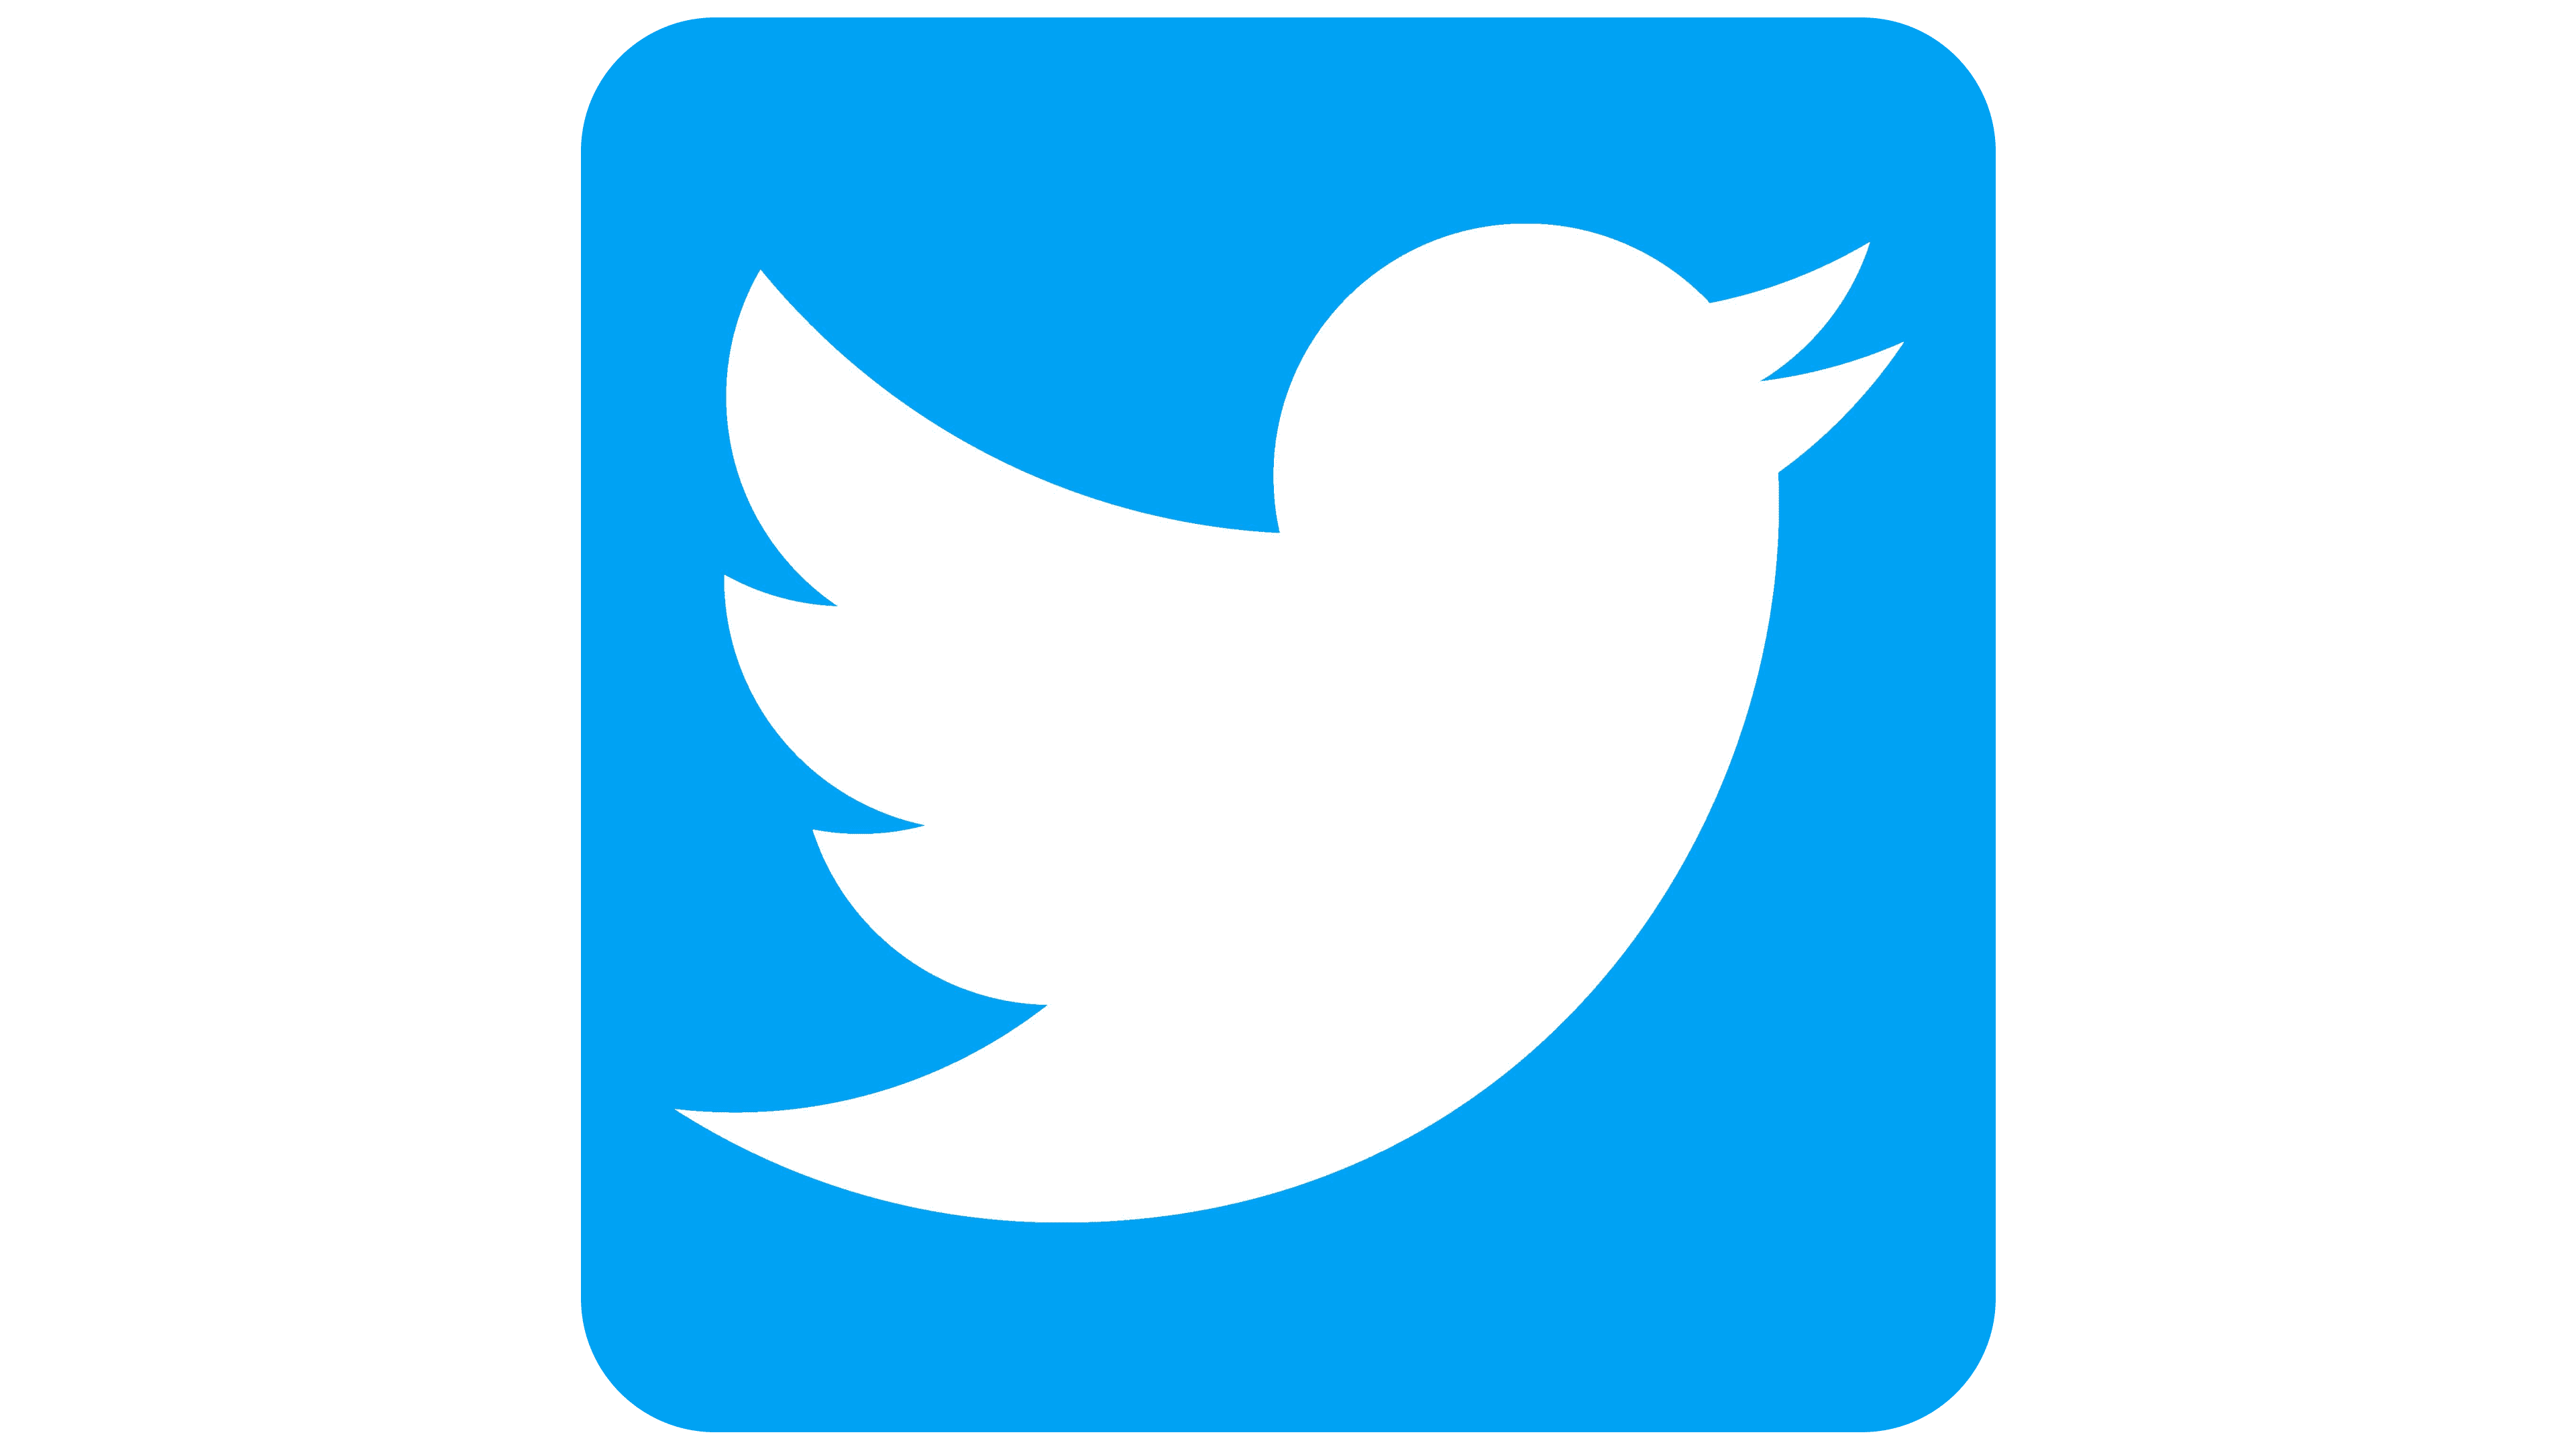 ツイッター Twitter で無料 有料のおすすめ自動フォローツールまとめ100選 インターネットビジネスで自由を叶える起業経営成功への道